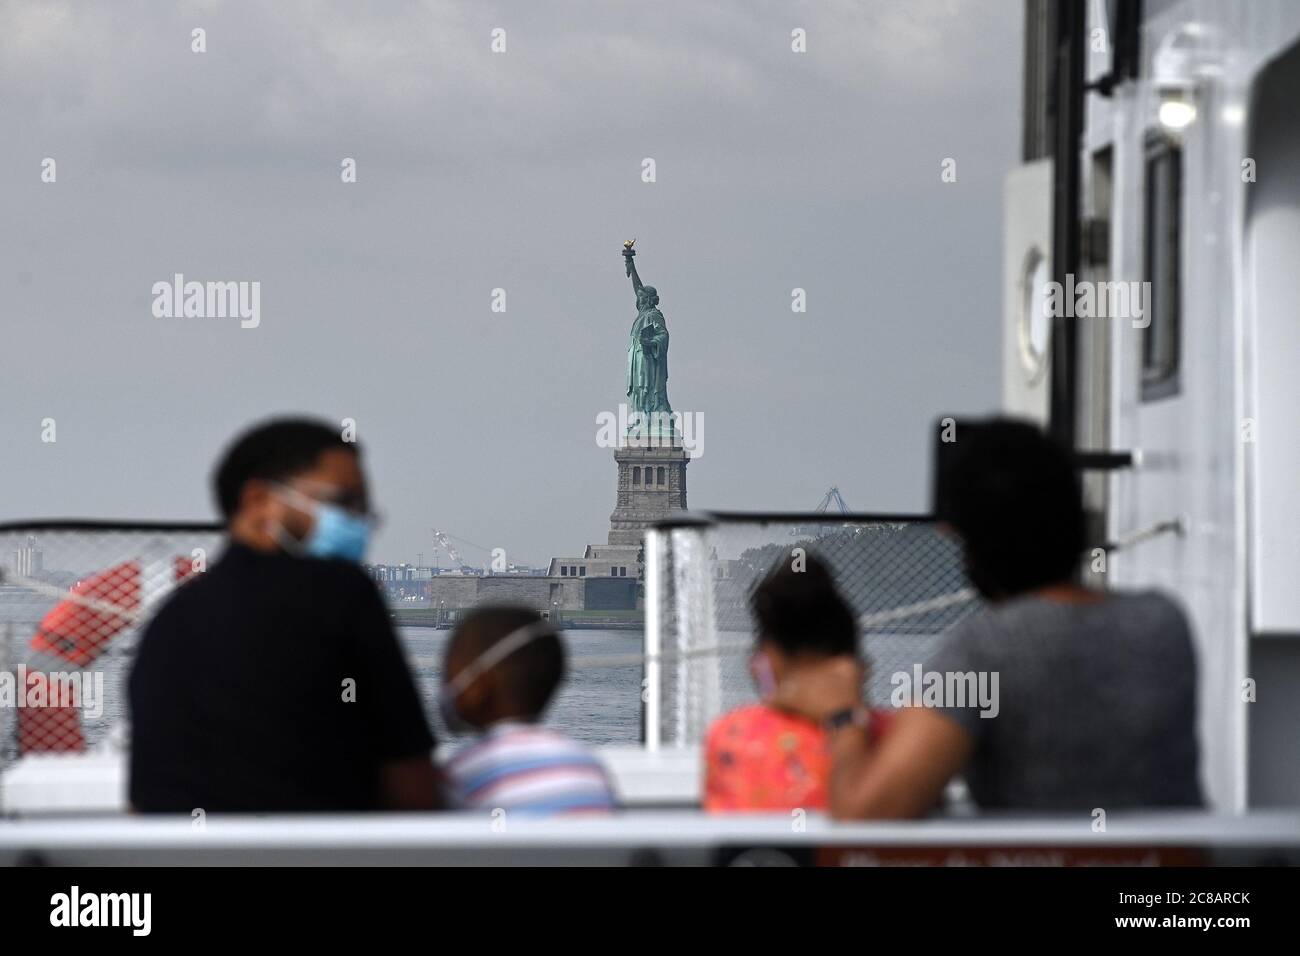 New York, États-Unis. 22 juillet 2020. La famille Fleming en visite au départ de Seattle, prenez un ferry pour Liberty Island maintenant accessible aux visiteurs dans le cadre de la réouverture de la ville de New York phase 4, mais l'accès à la Statue de la liberté elle-même, y compris la couronne et le piédestal, reste fermé en raison des restrictions de la COVID-19, New York, NY, 22 juillet 2020. Depuis son ouverture lundi, les foules habituelles de dizaines de milliers de personnes ont été absentes, au lieu de cela, un flux lent de quelques centaines de touristes seulement ont été comptés visitant la « Dame liberté ». (Anthony Behar/Sipa USA) crédit: SIPA USA/Alay Live News Banque D'Images